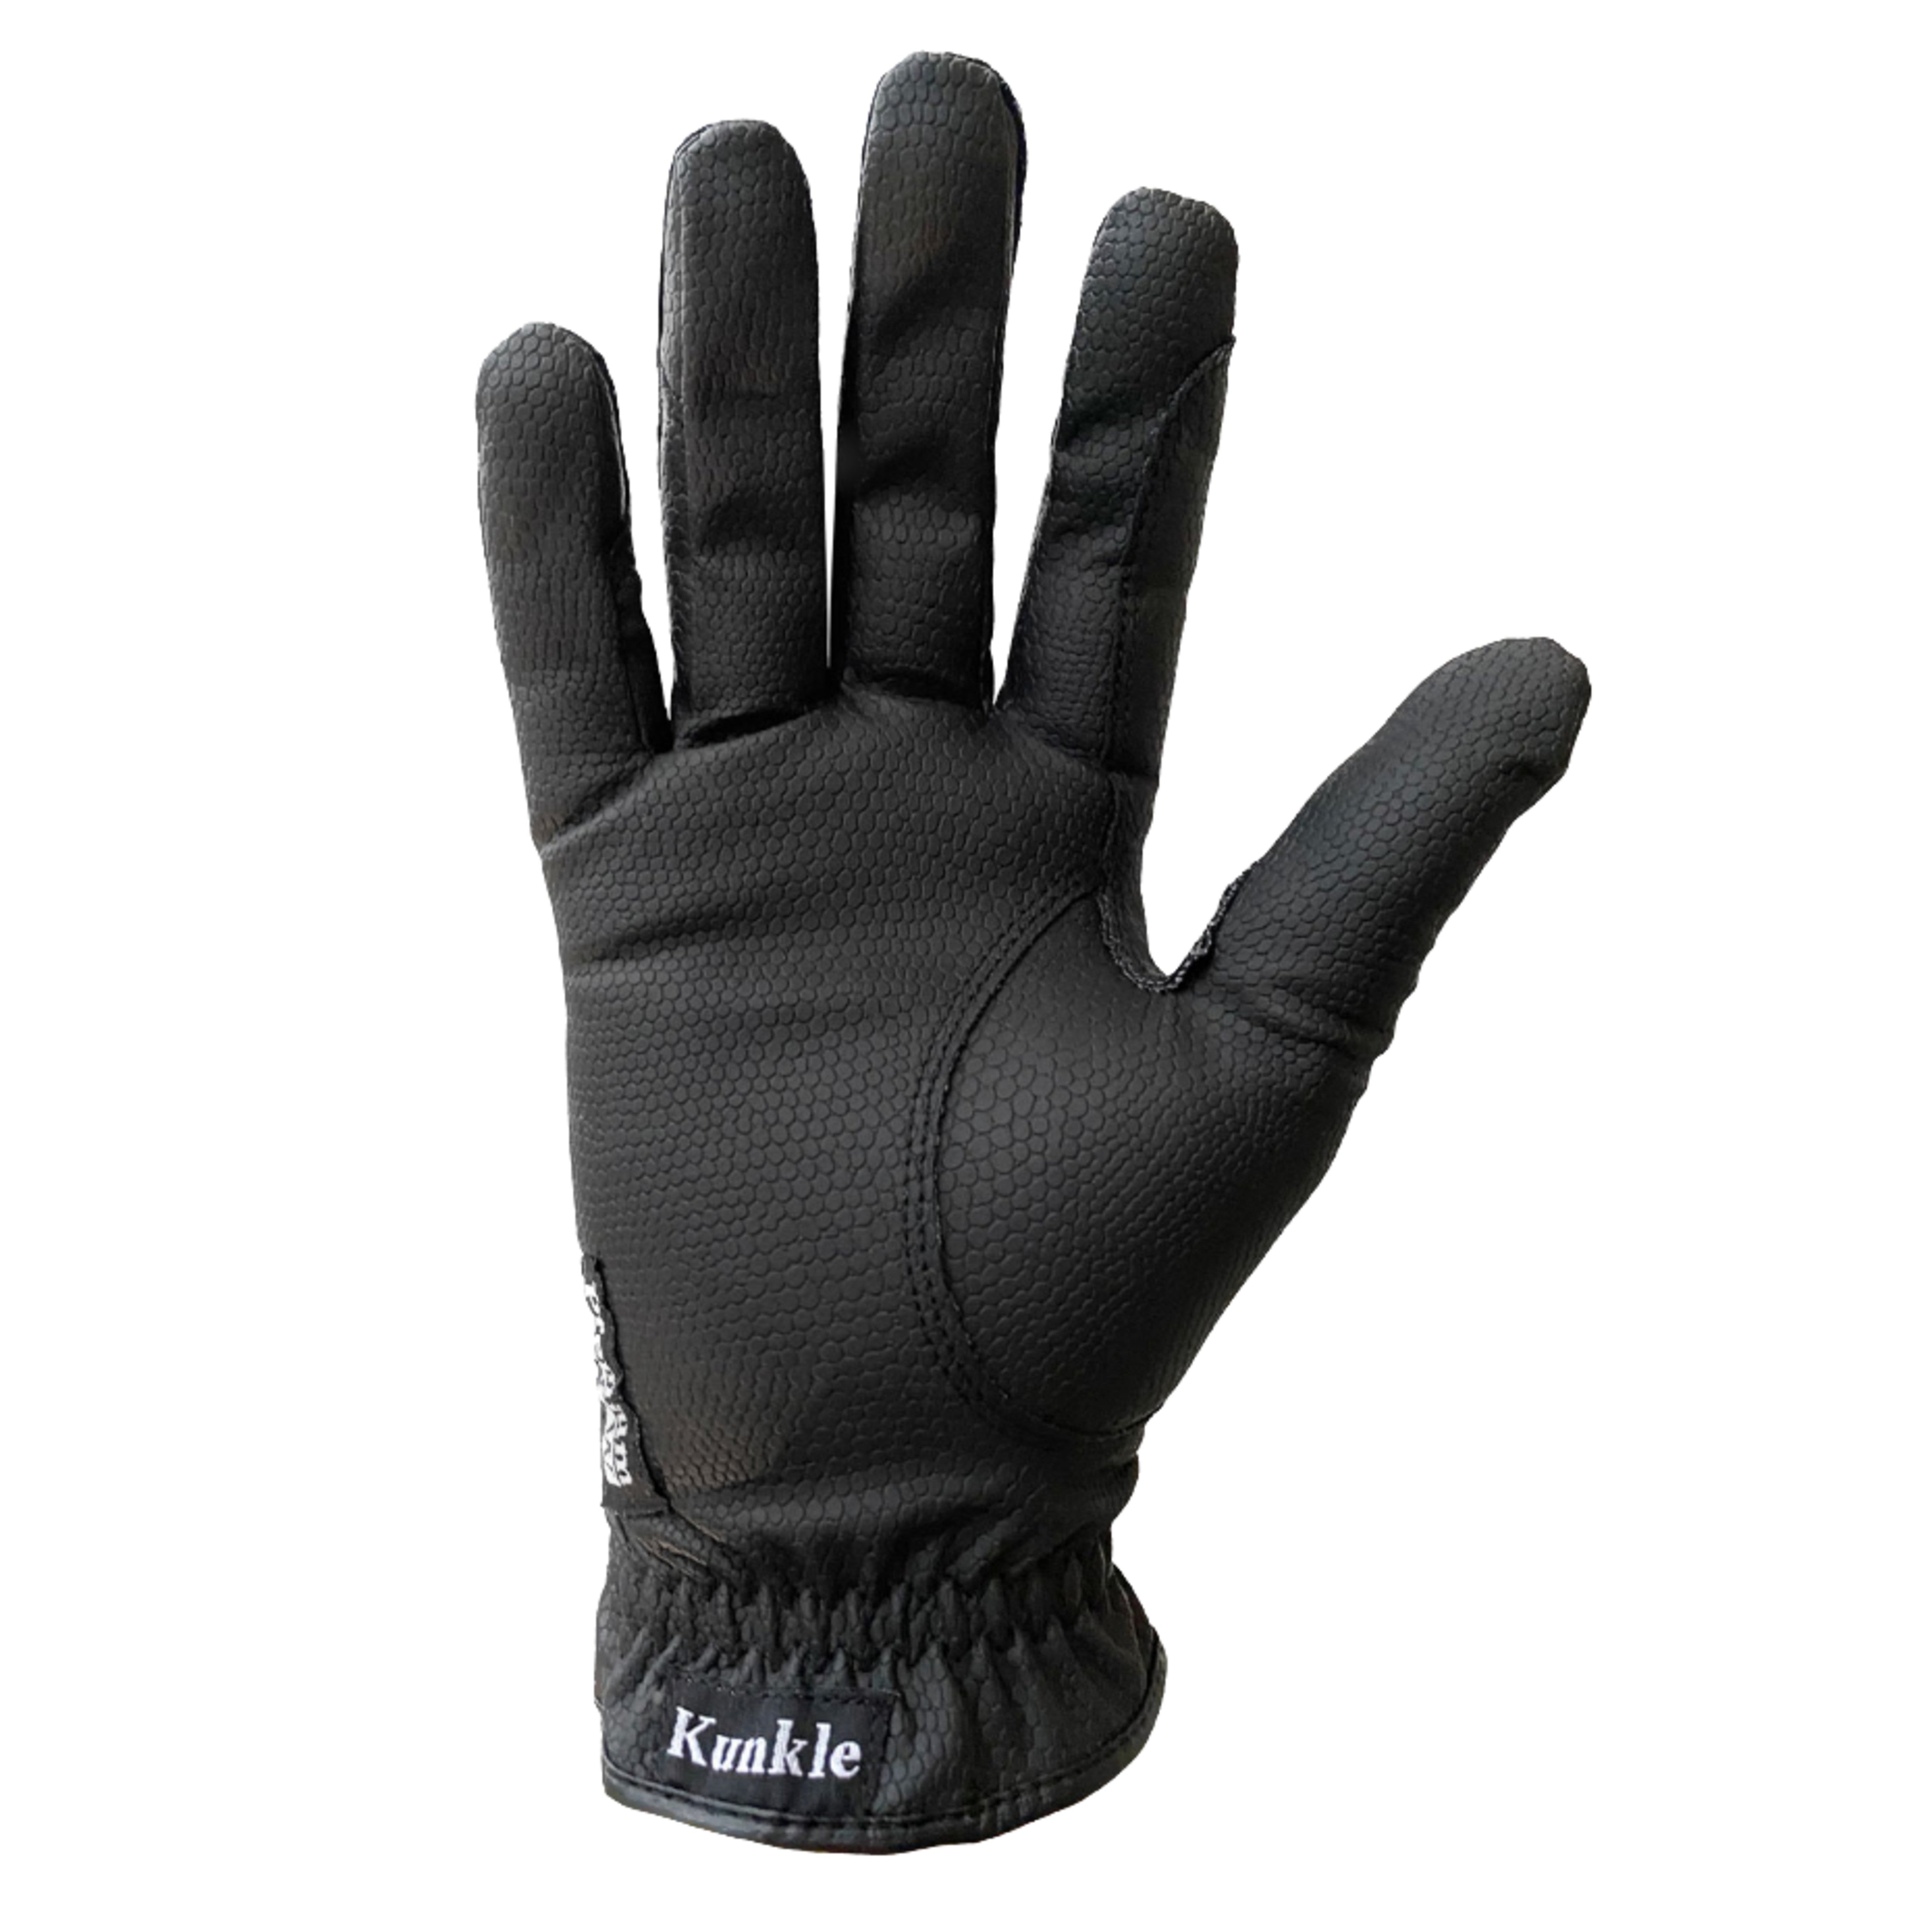 Kunkle Equestrian Mesh Gloves